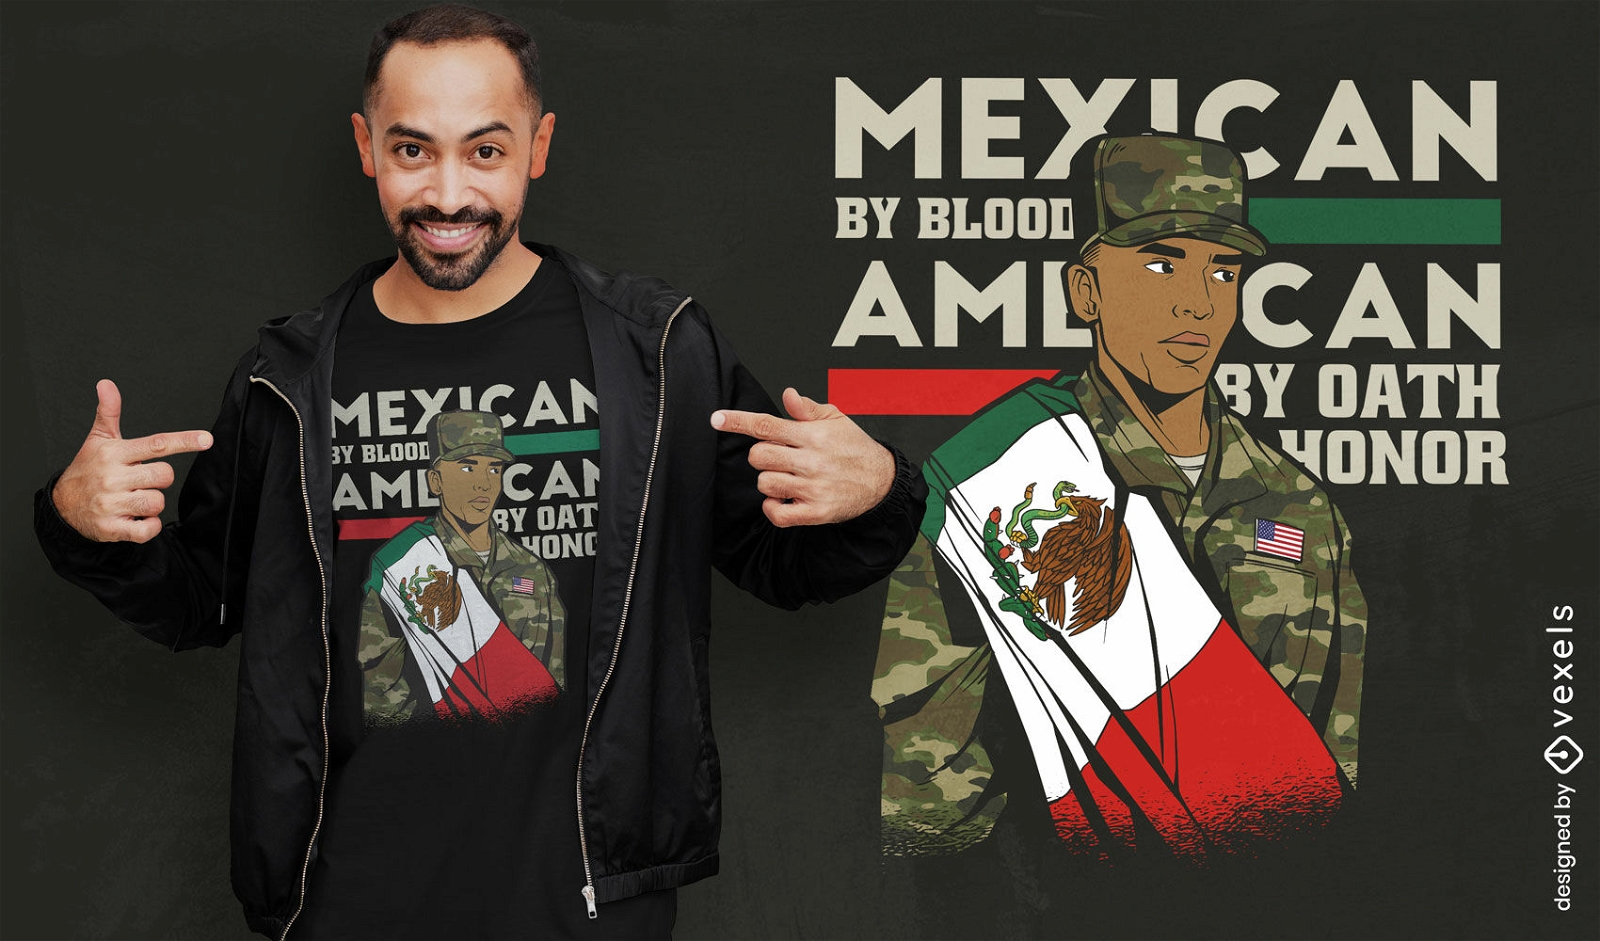 Dise?o de camiseta de soldado mexicano americano.